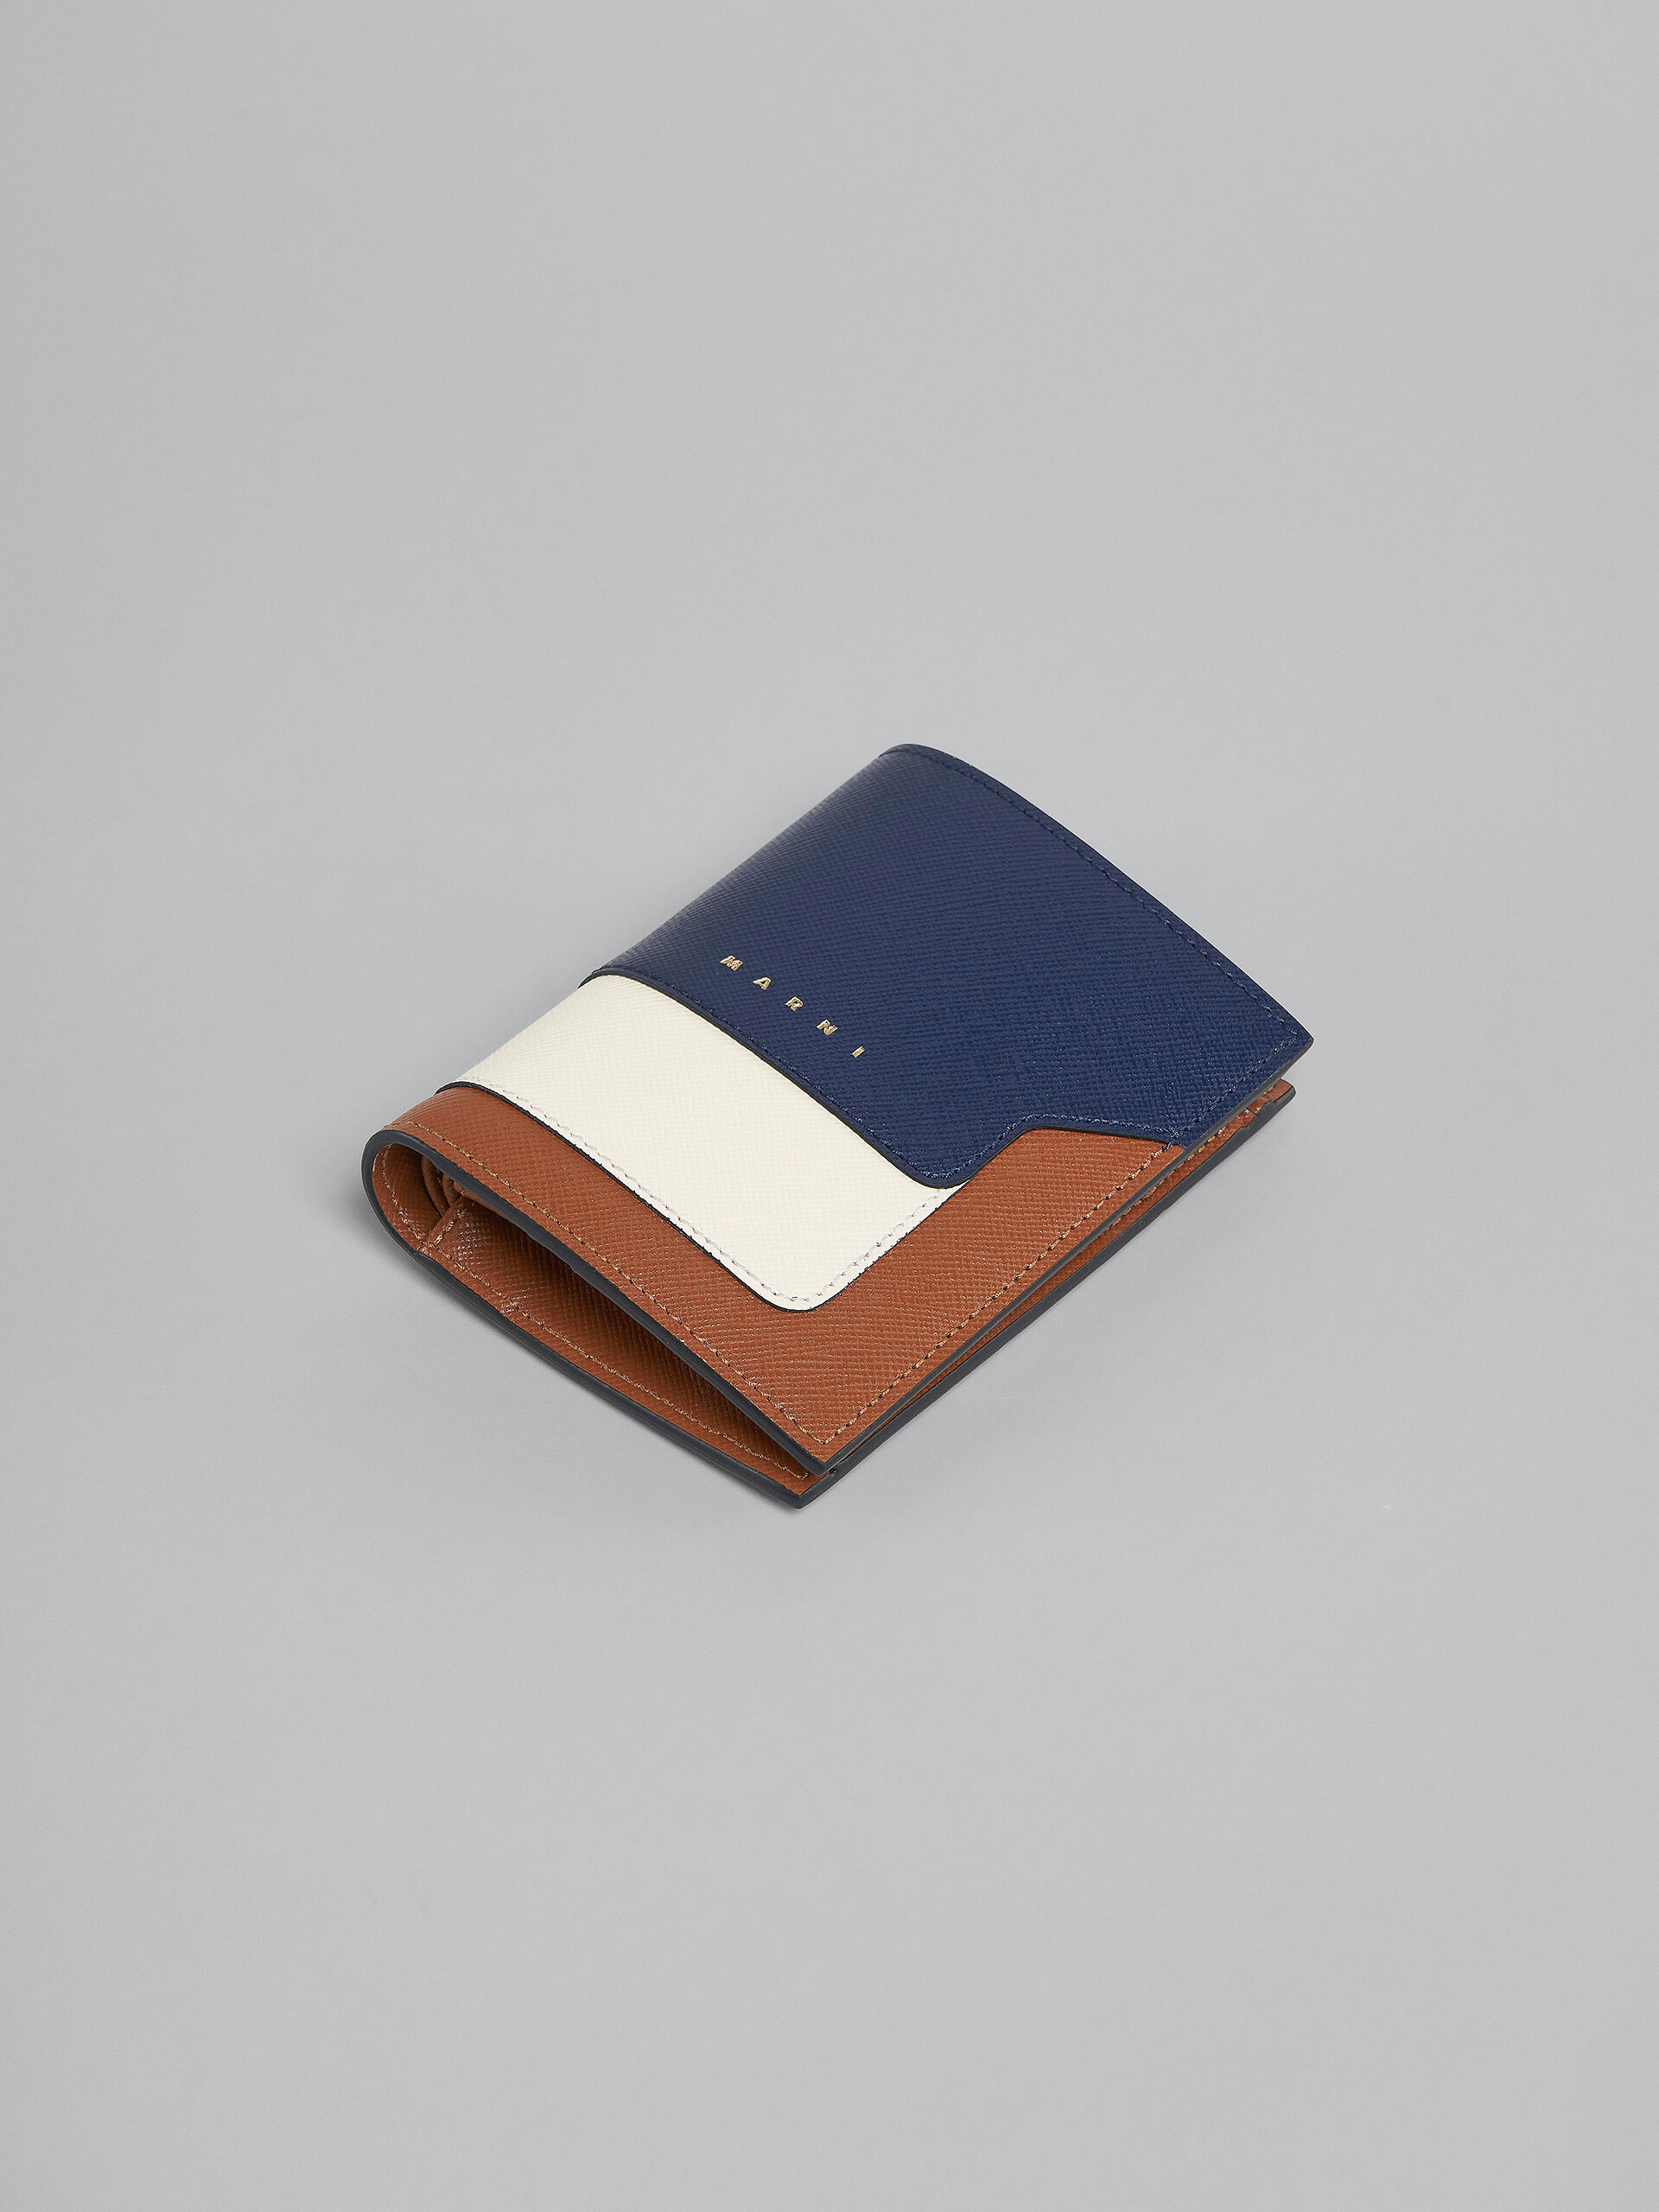 Zweifache Faltbrieftasche aus Saffiano-Leder in Blau, Weiß und Braun - Brieftaschen - Image 5